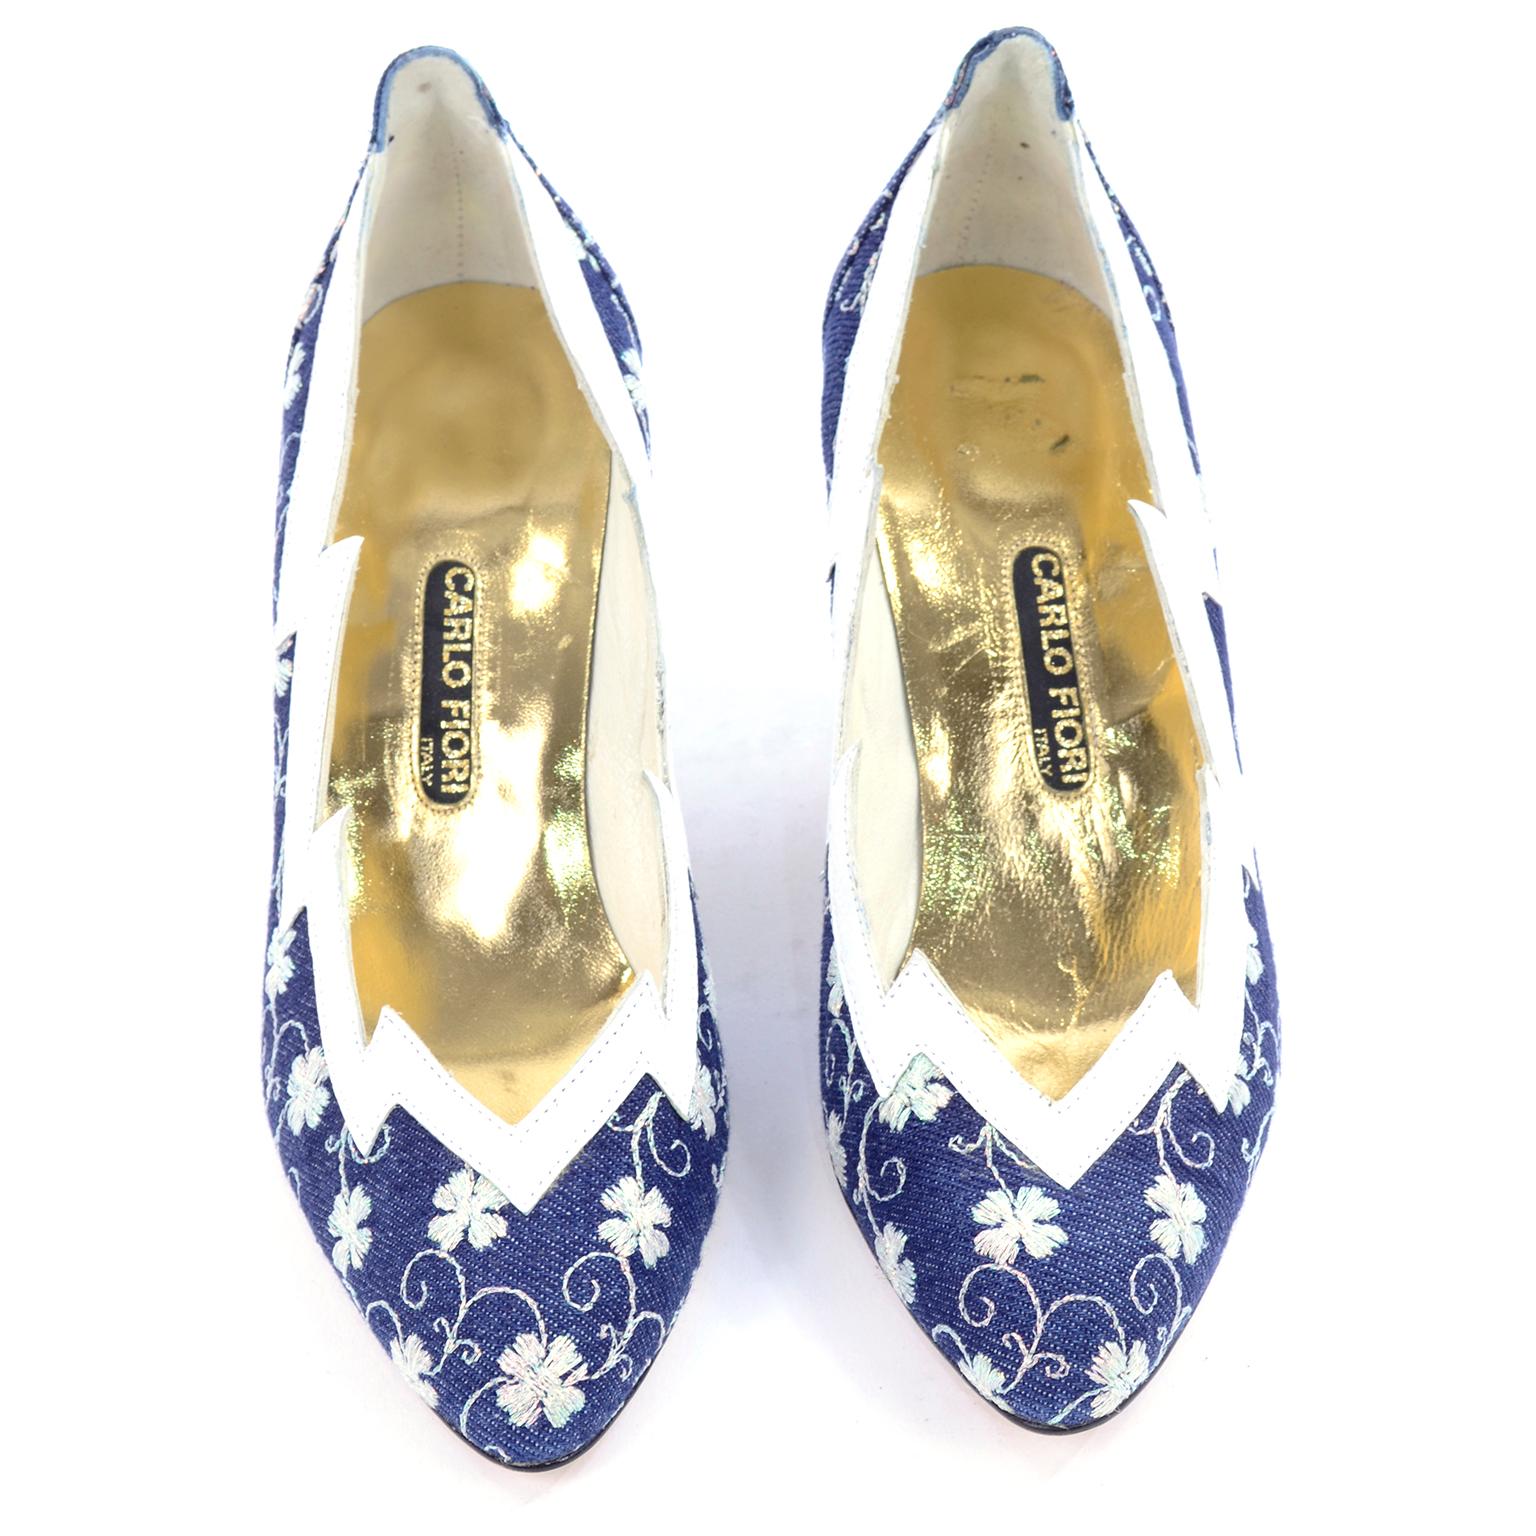 Il s'agit de talons en denim bleu et blanc brodé de Carlo Fiori Italy, non portés. Les chaussures ont une empeigne en cuir blanc avec des bords en zigzag et le tissu bleu denim est cousu avec des fleurs blanches irisées et des trèfles à quatre